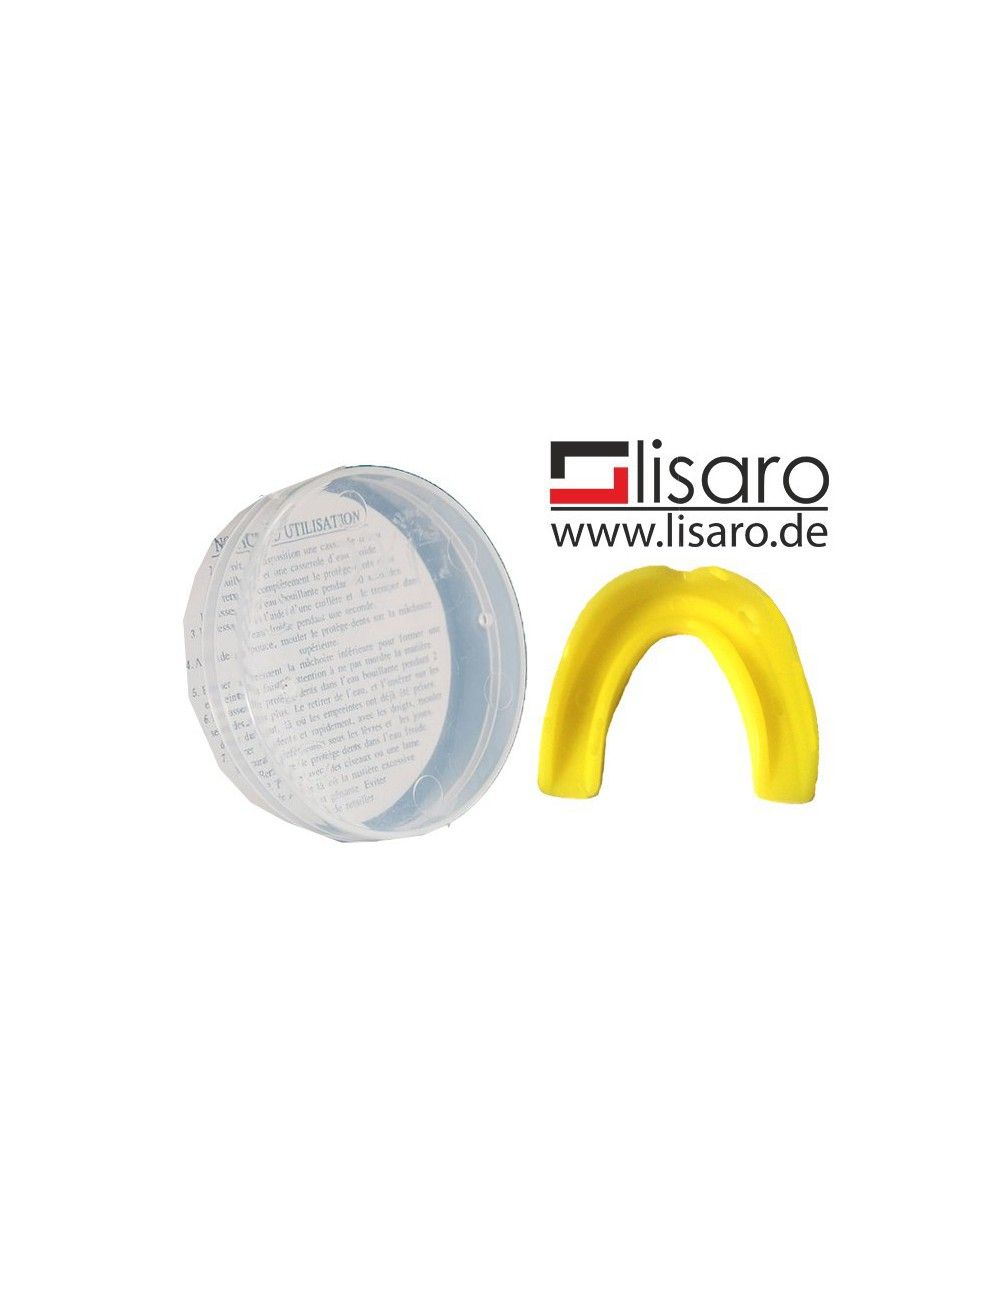 Zahnschutz / Mundschutz mit Box gelb/ LISARO - Kopie - 1